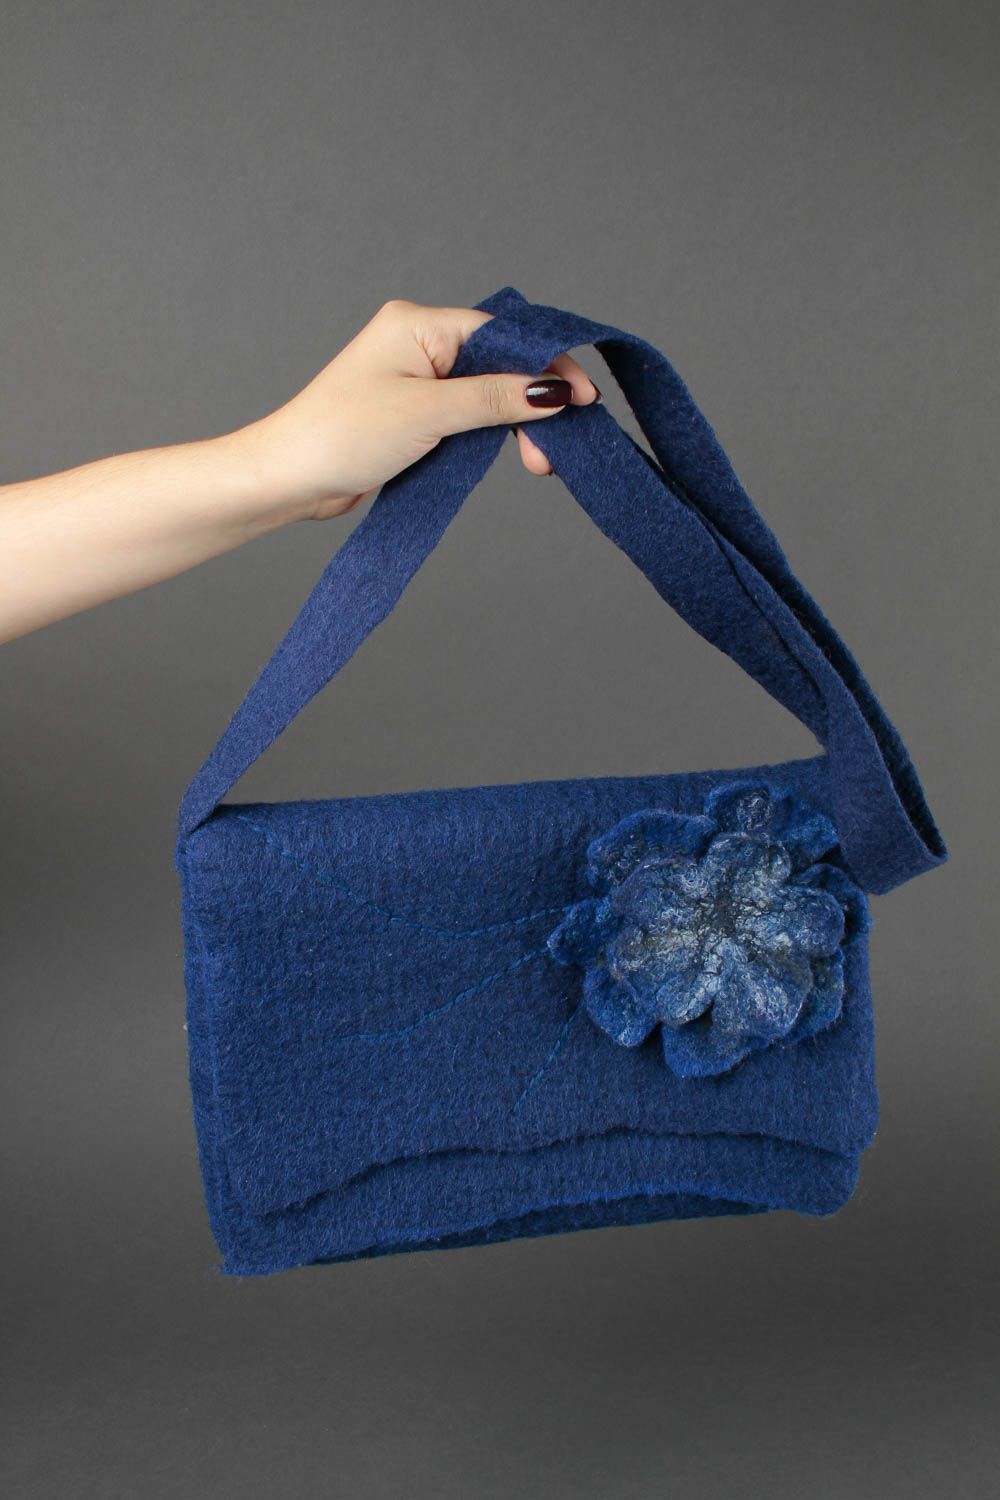 Сумка ручной работы женская сумка синяя через плечо сумка валяние с цветком фото 1